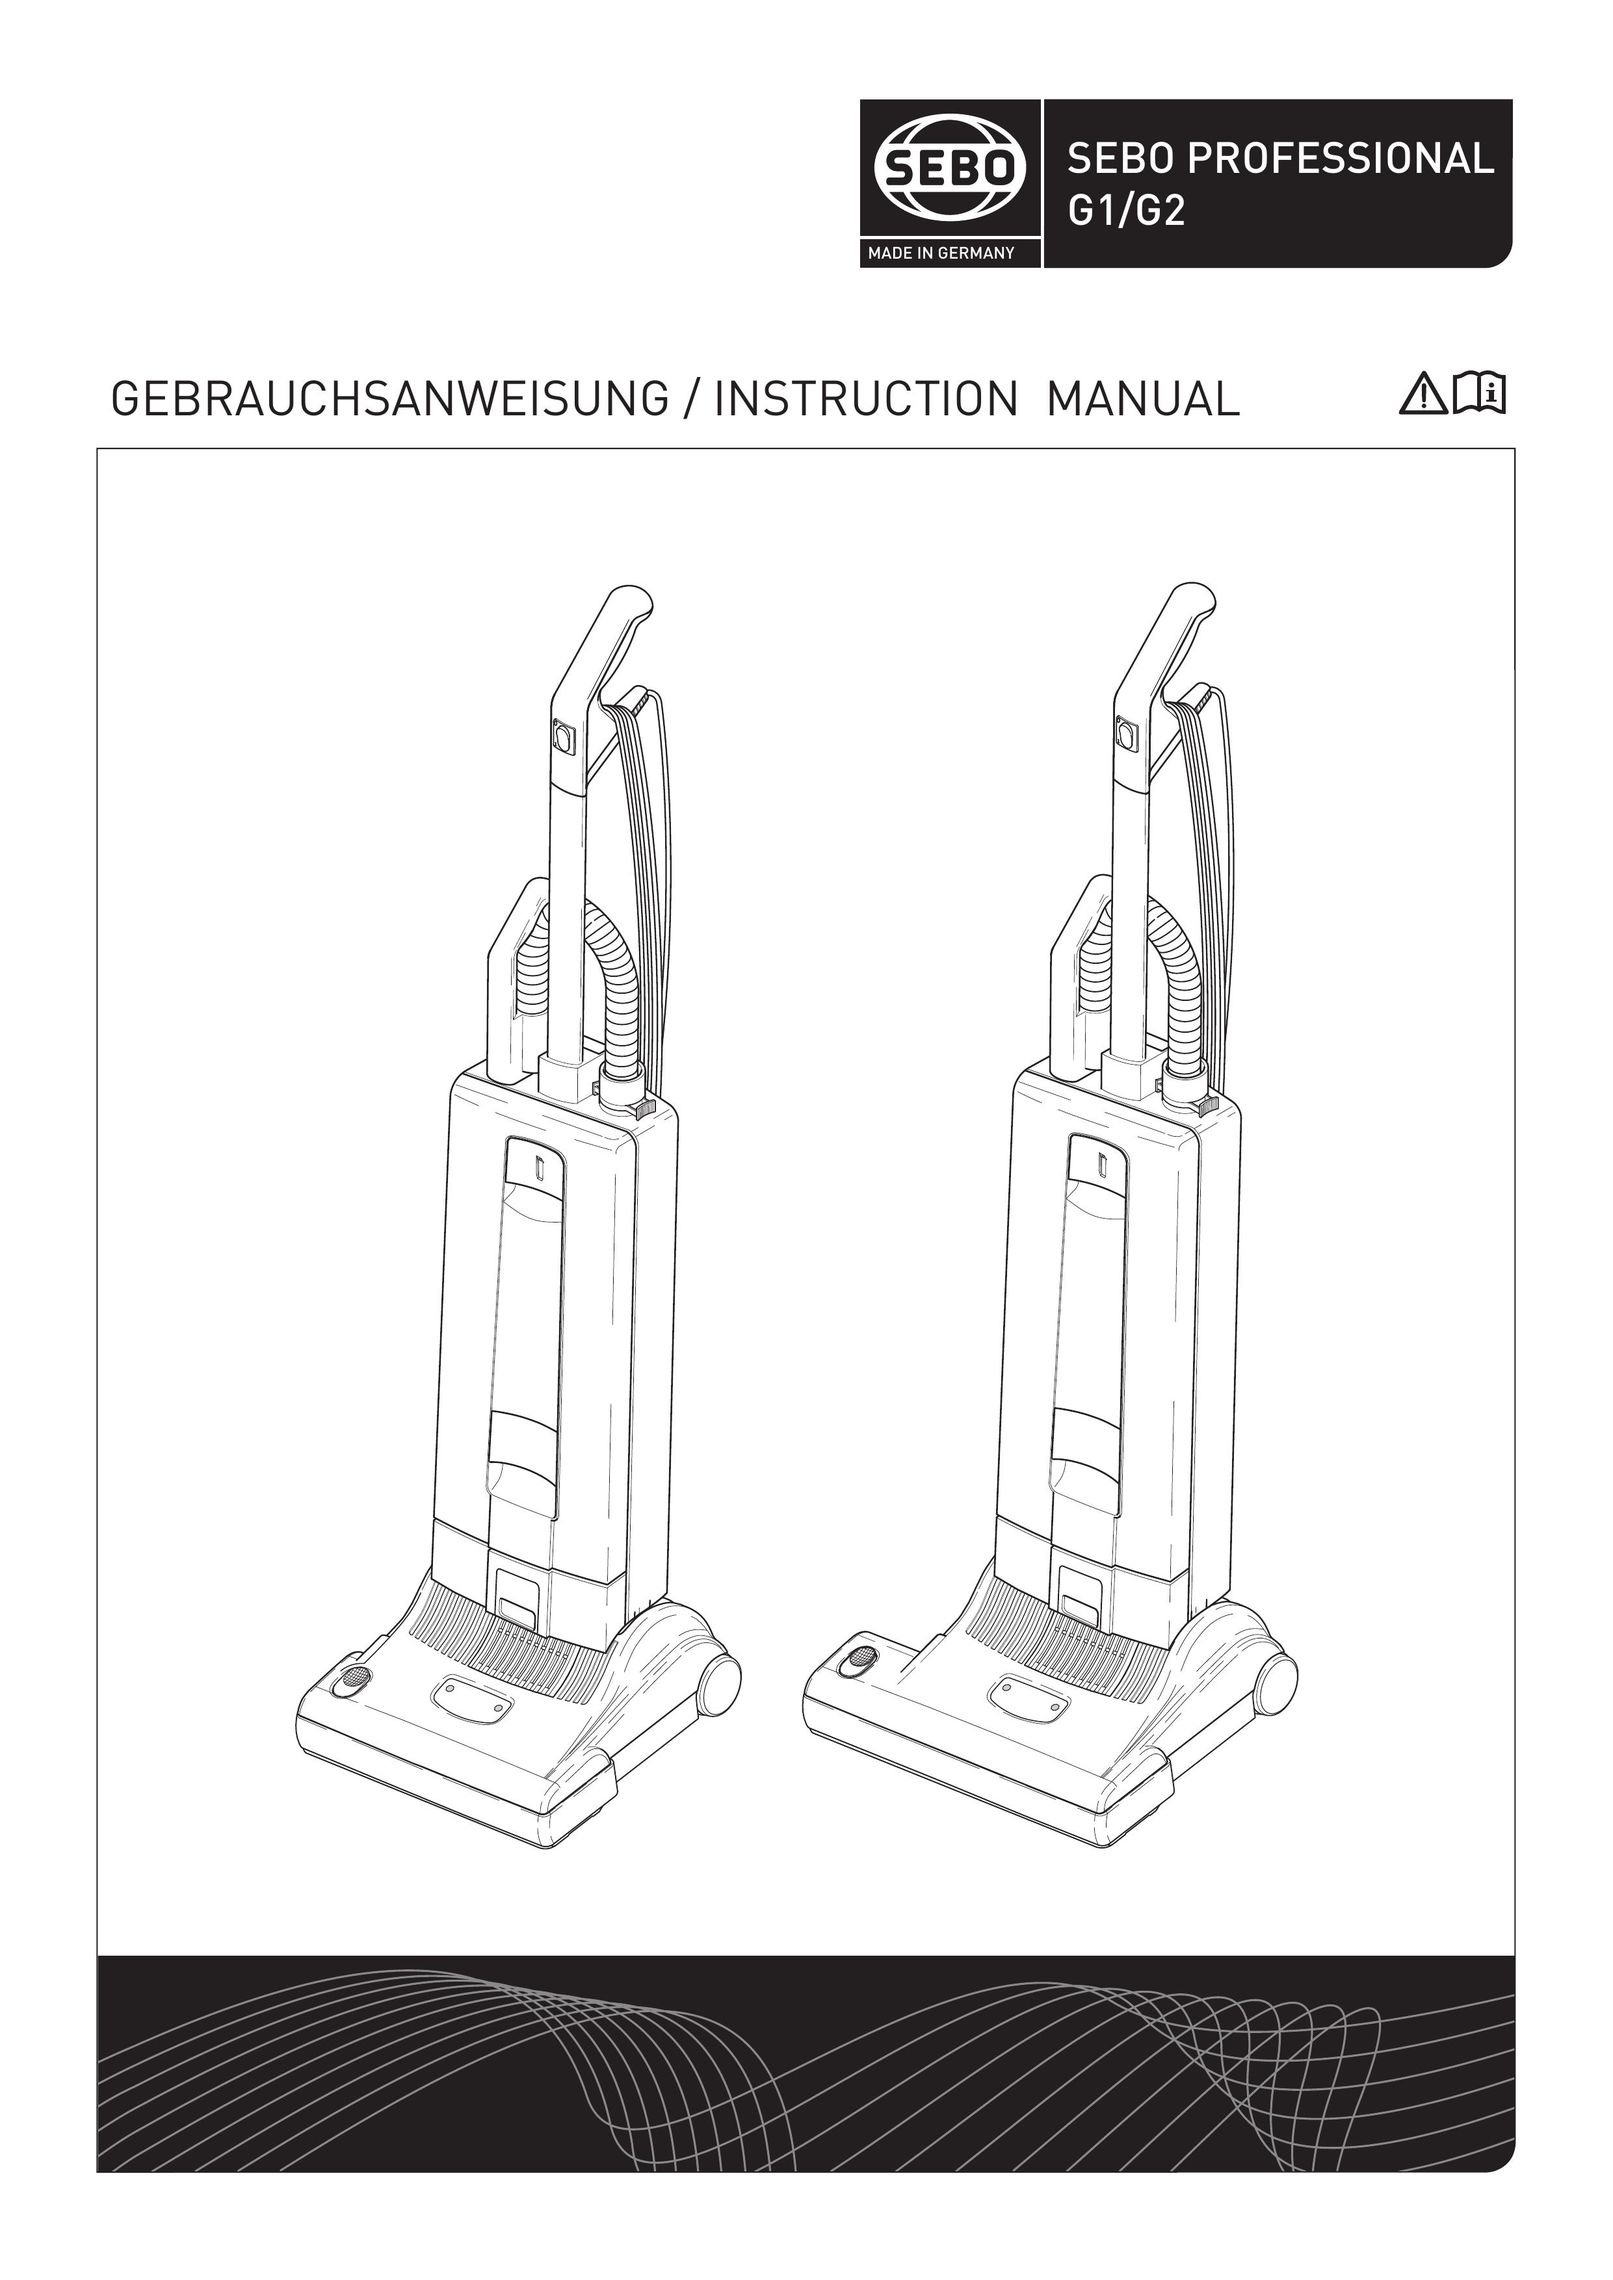 Sebo G2 Vacuum Cleaner User Manual